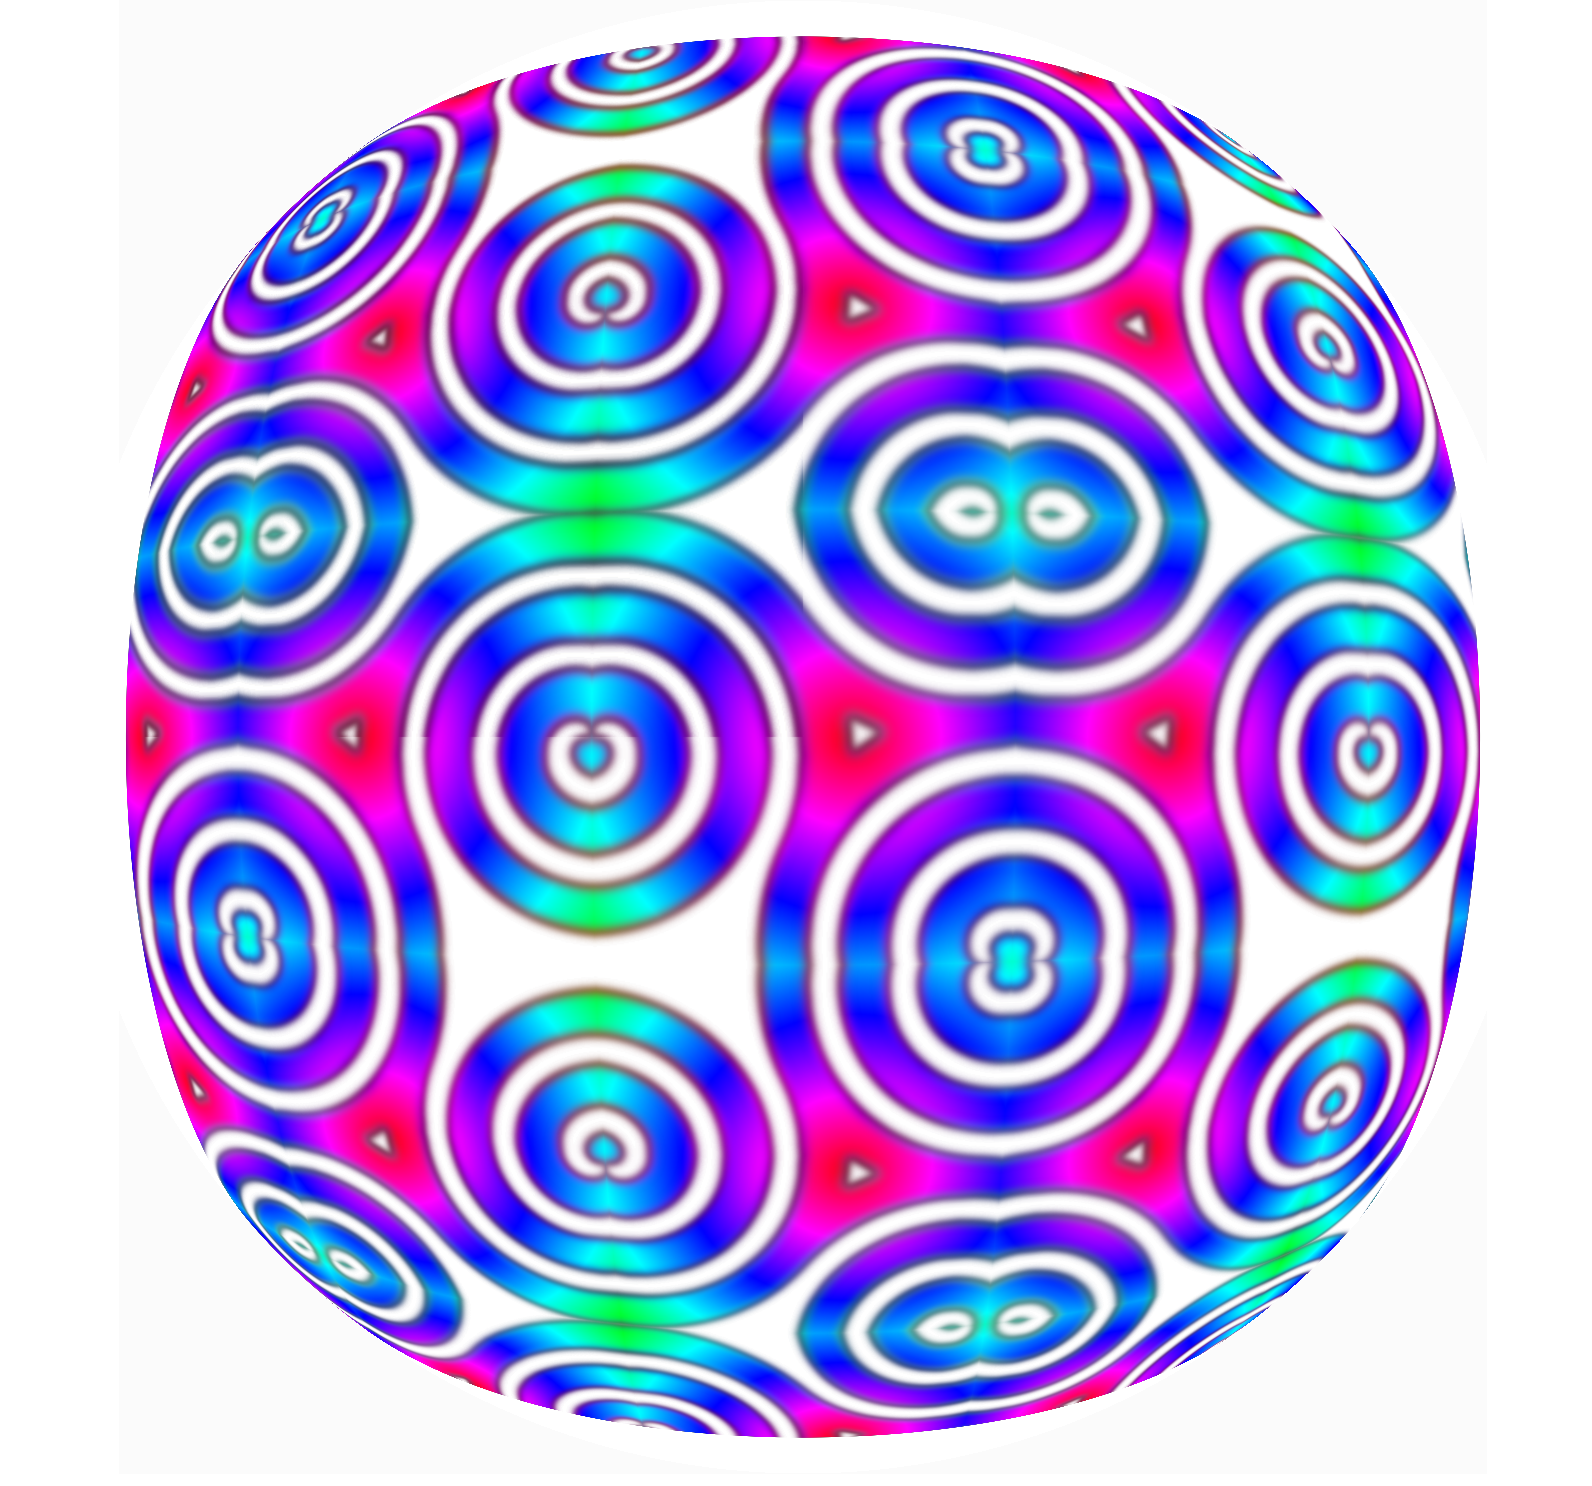 wow-triple spiral-21j._000006.png